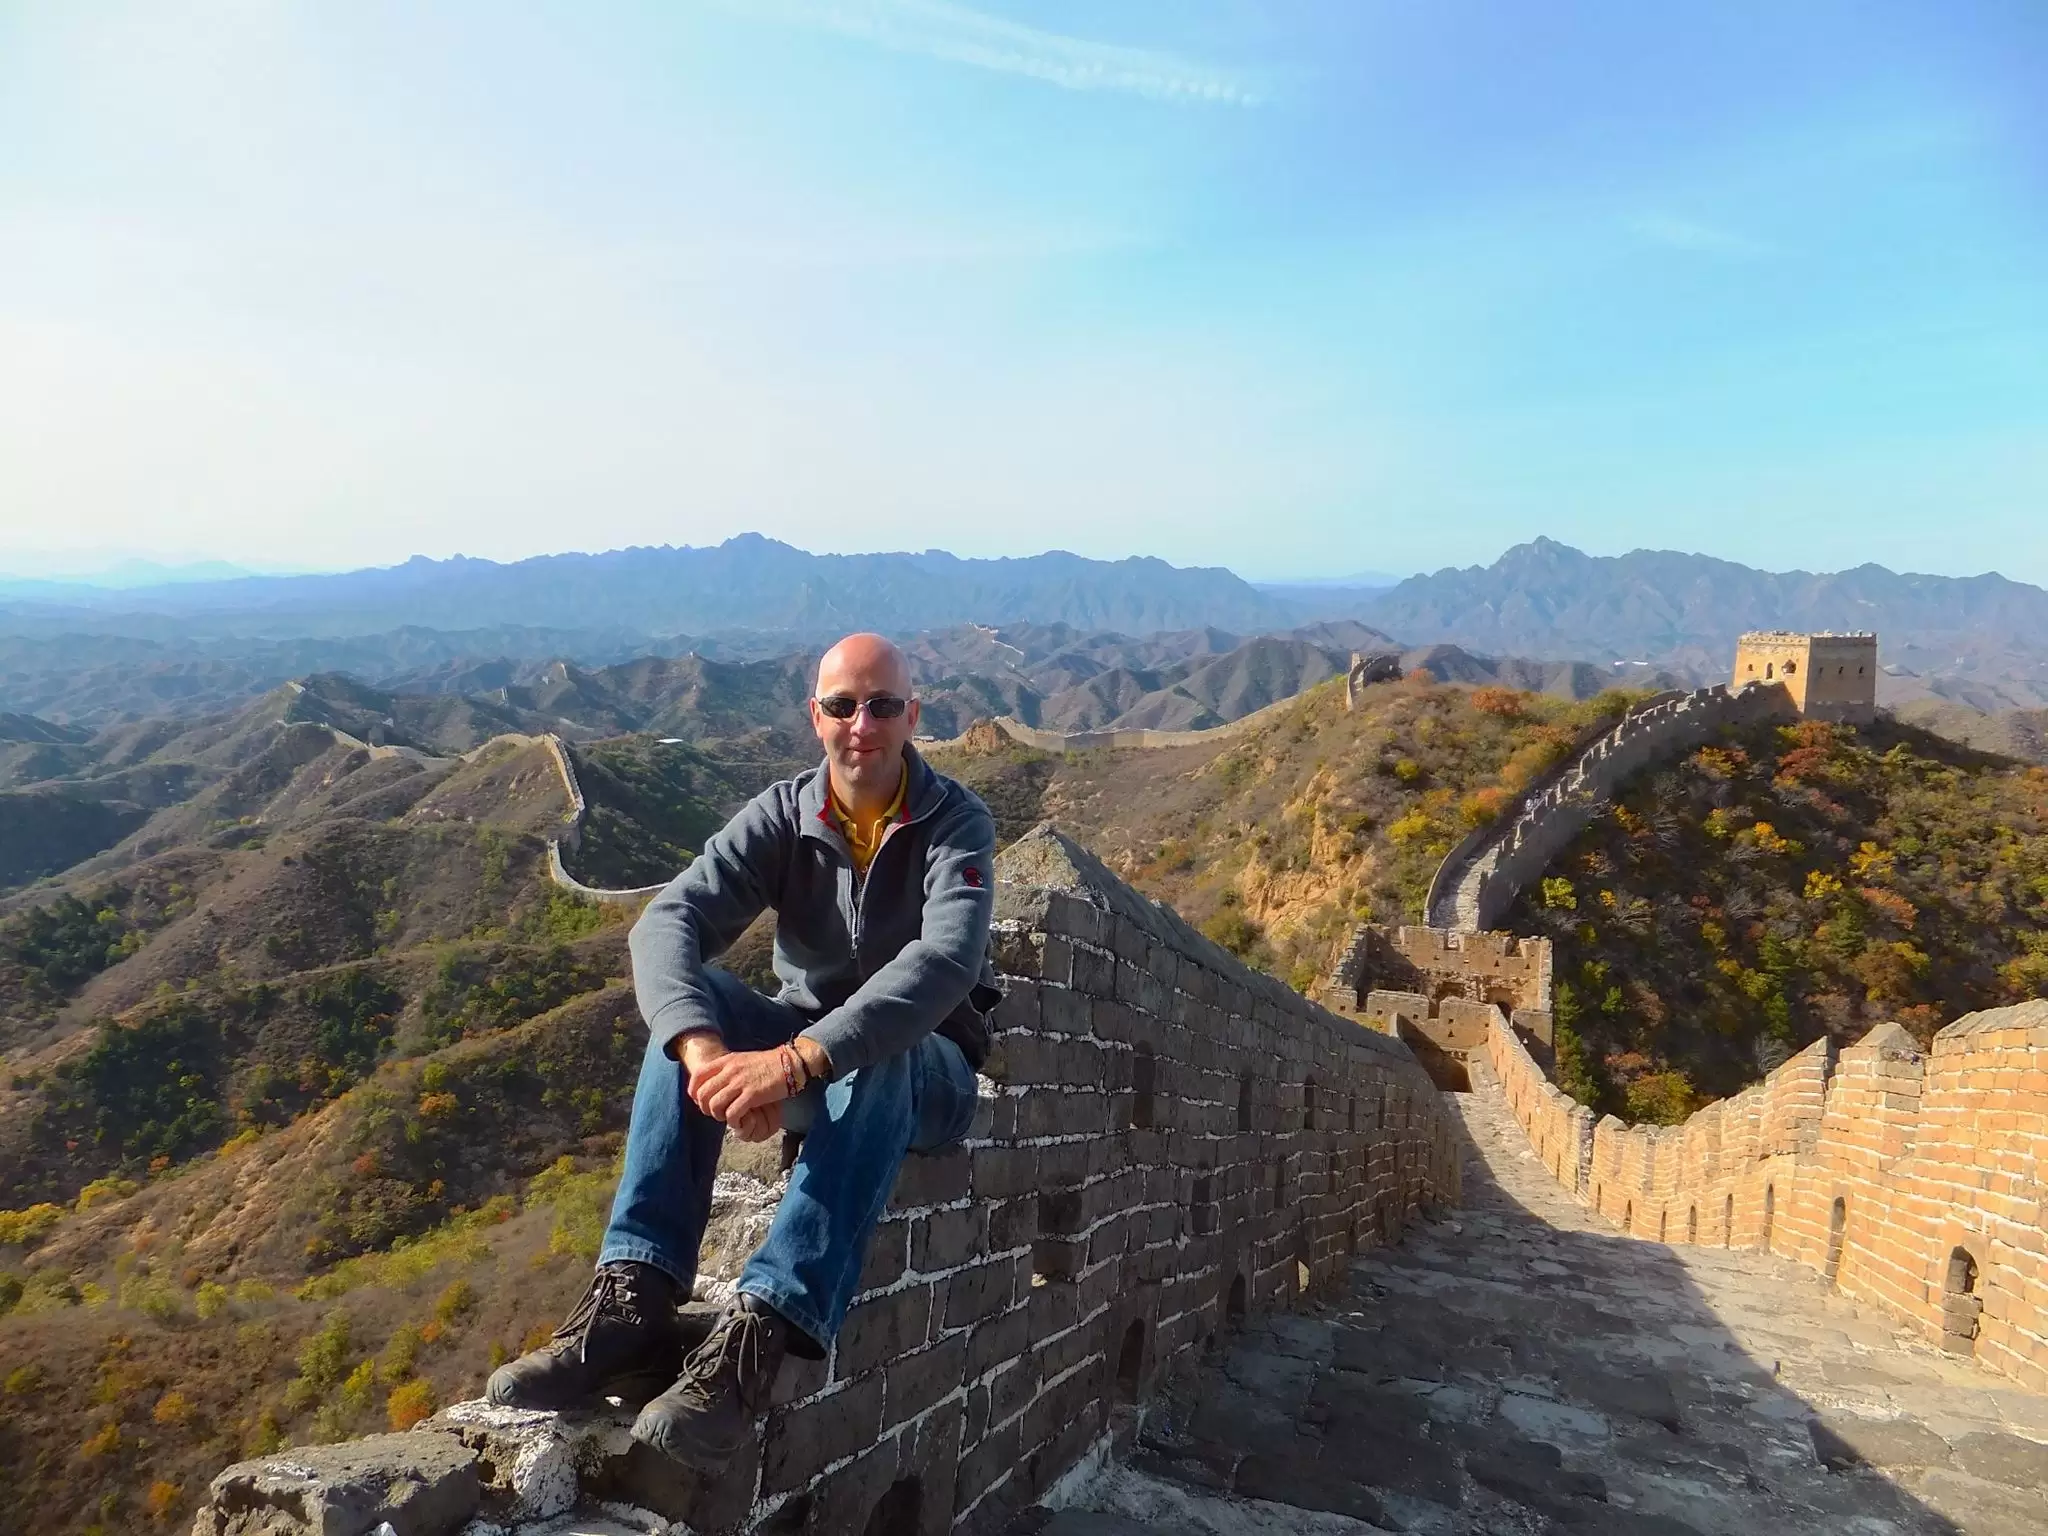 Jinshanling Great Wall